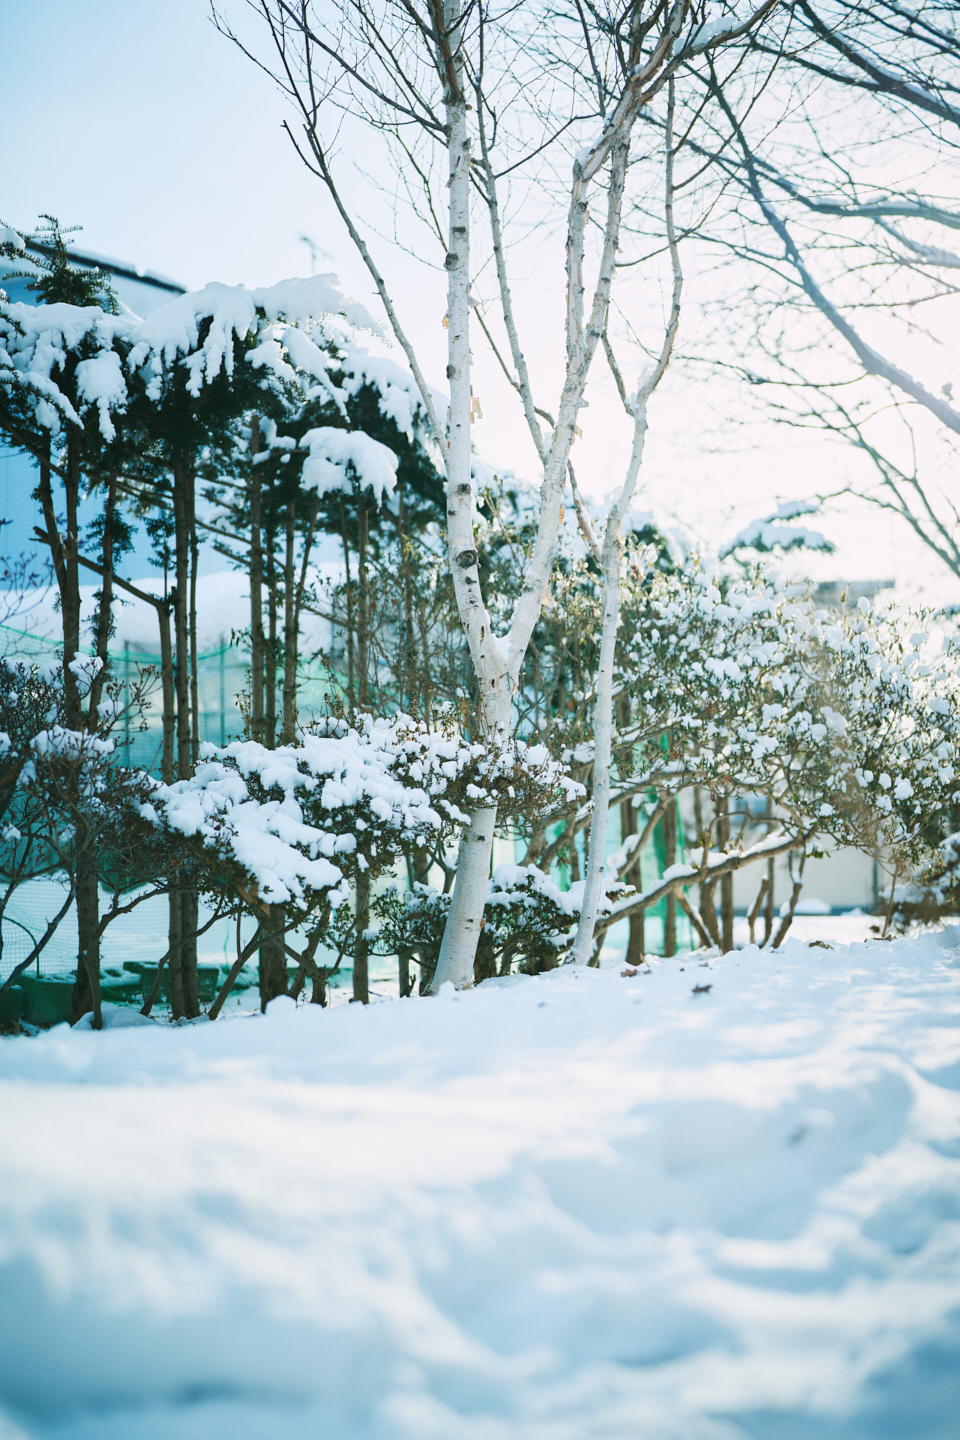 【写真】北海道白老町の風景。道の植え込みの木々に雪が積もっている。